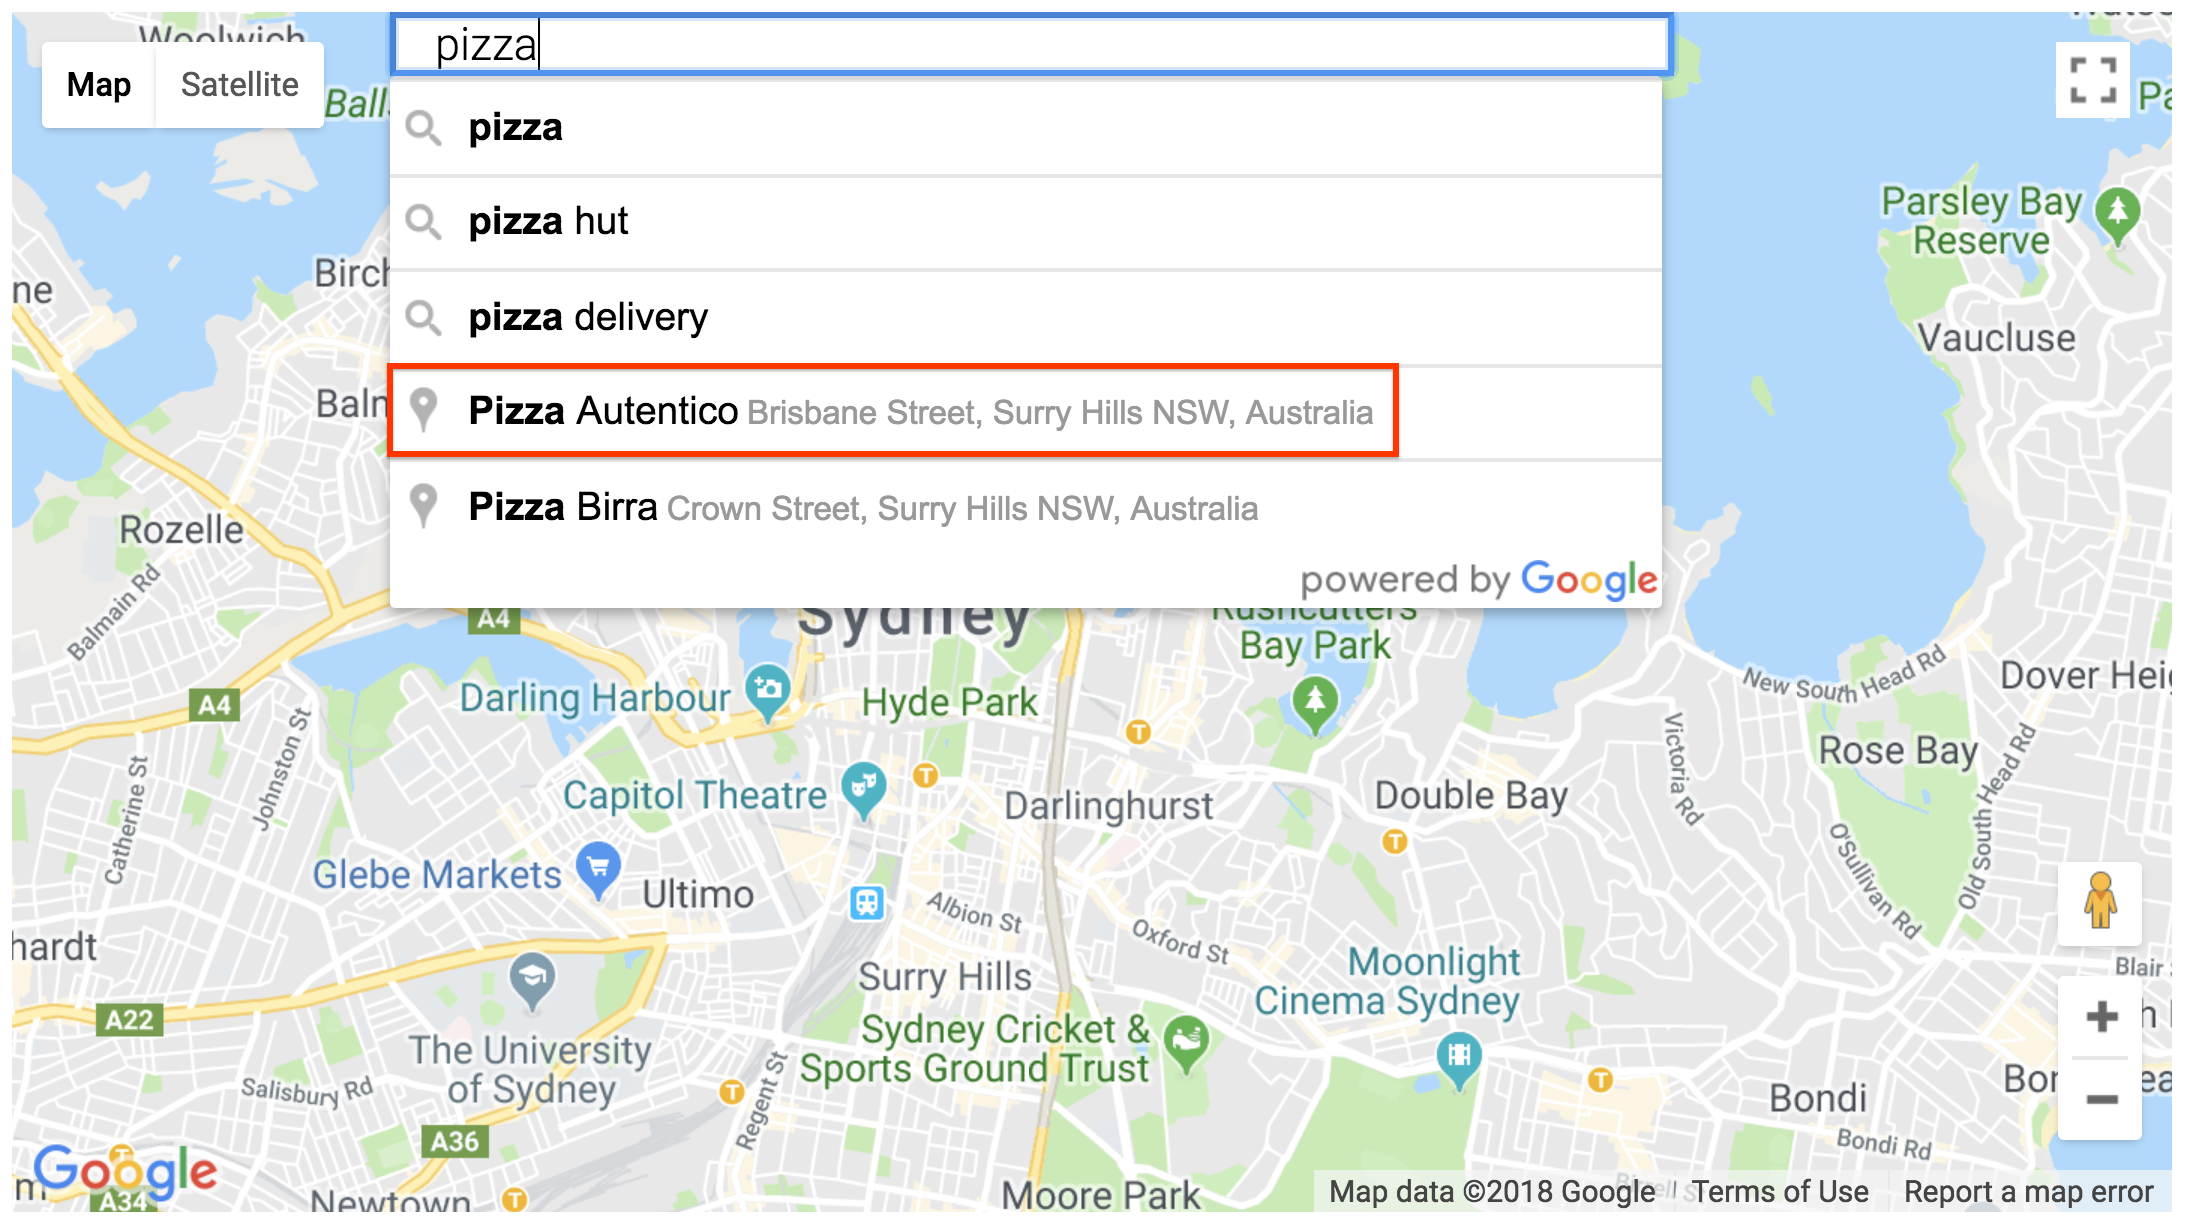 Résultat de lieu du widget Places Details SearchBox